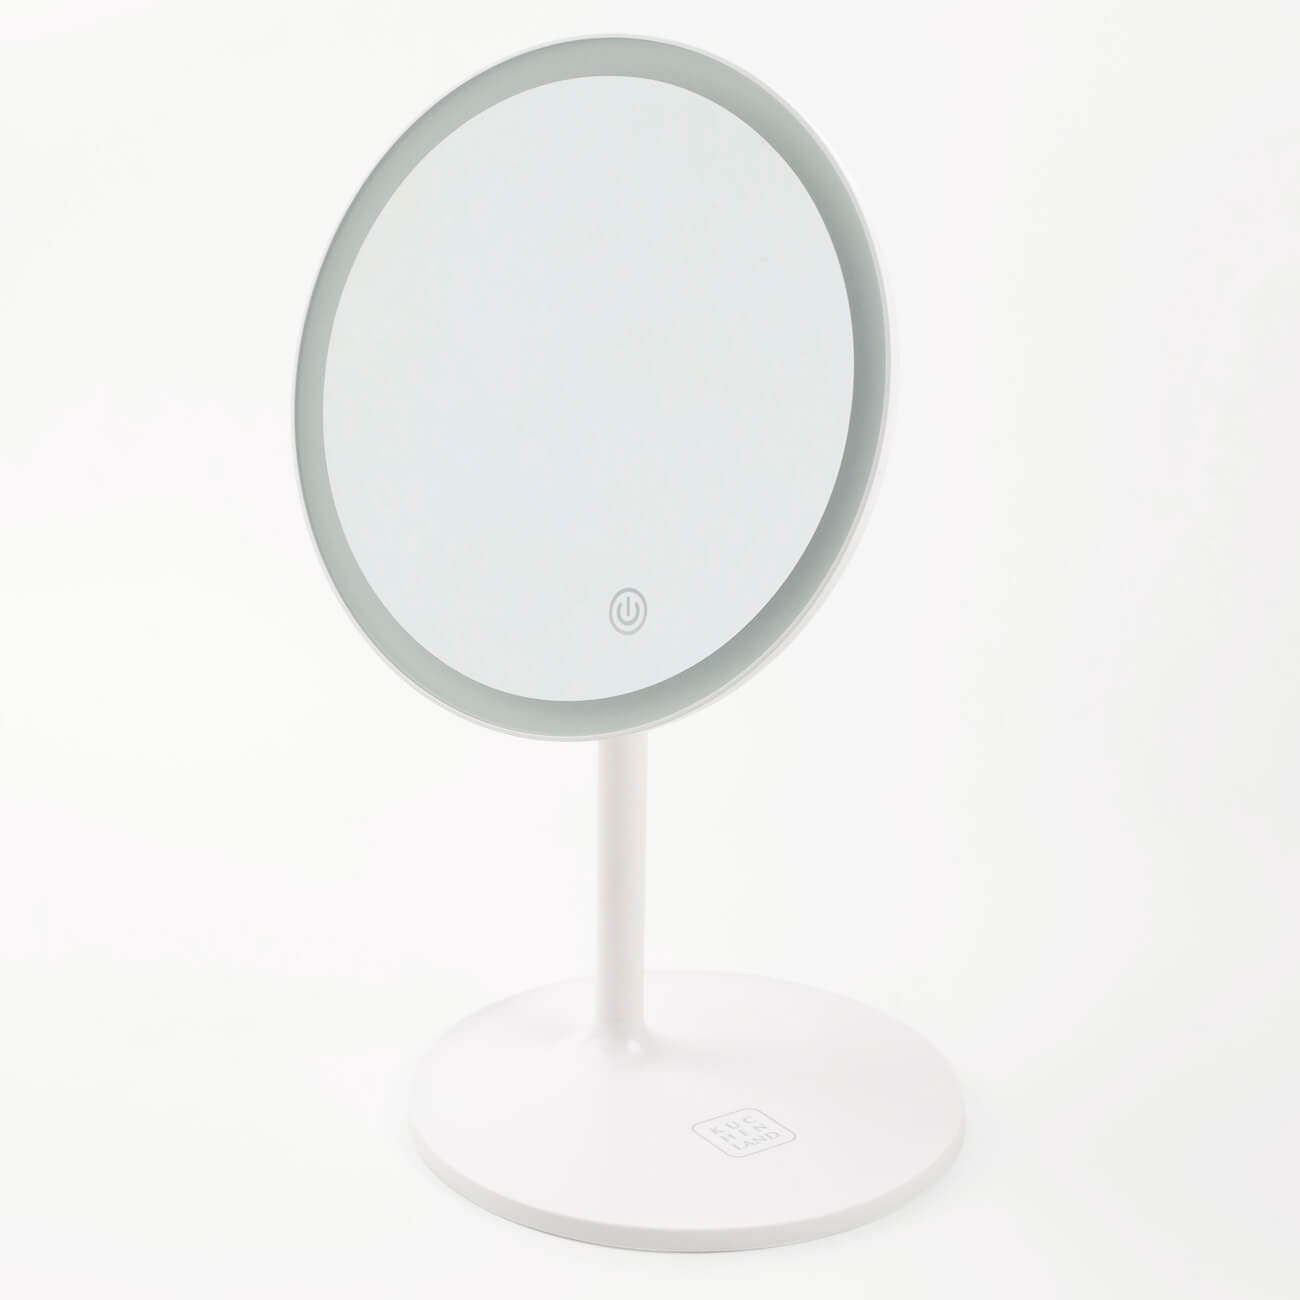 Зеркало настольное, 33 см, с подсветкой, на подставке, пластик, круглое, белое, Vesta фонарь кемпинговый эра kb 501 нло пластик б0029177